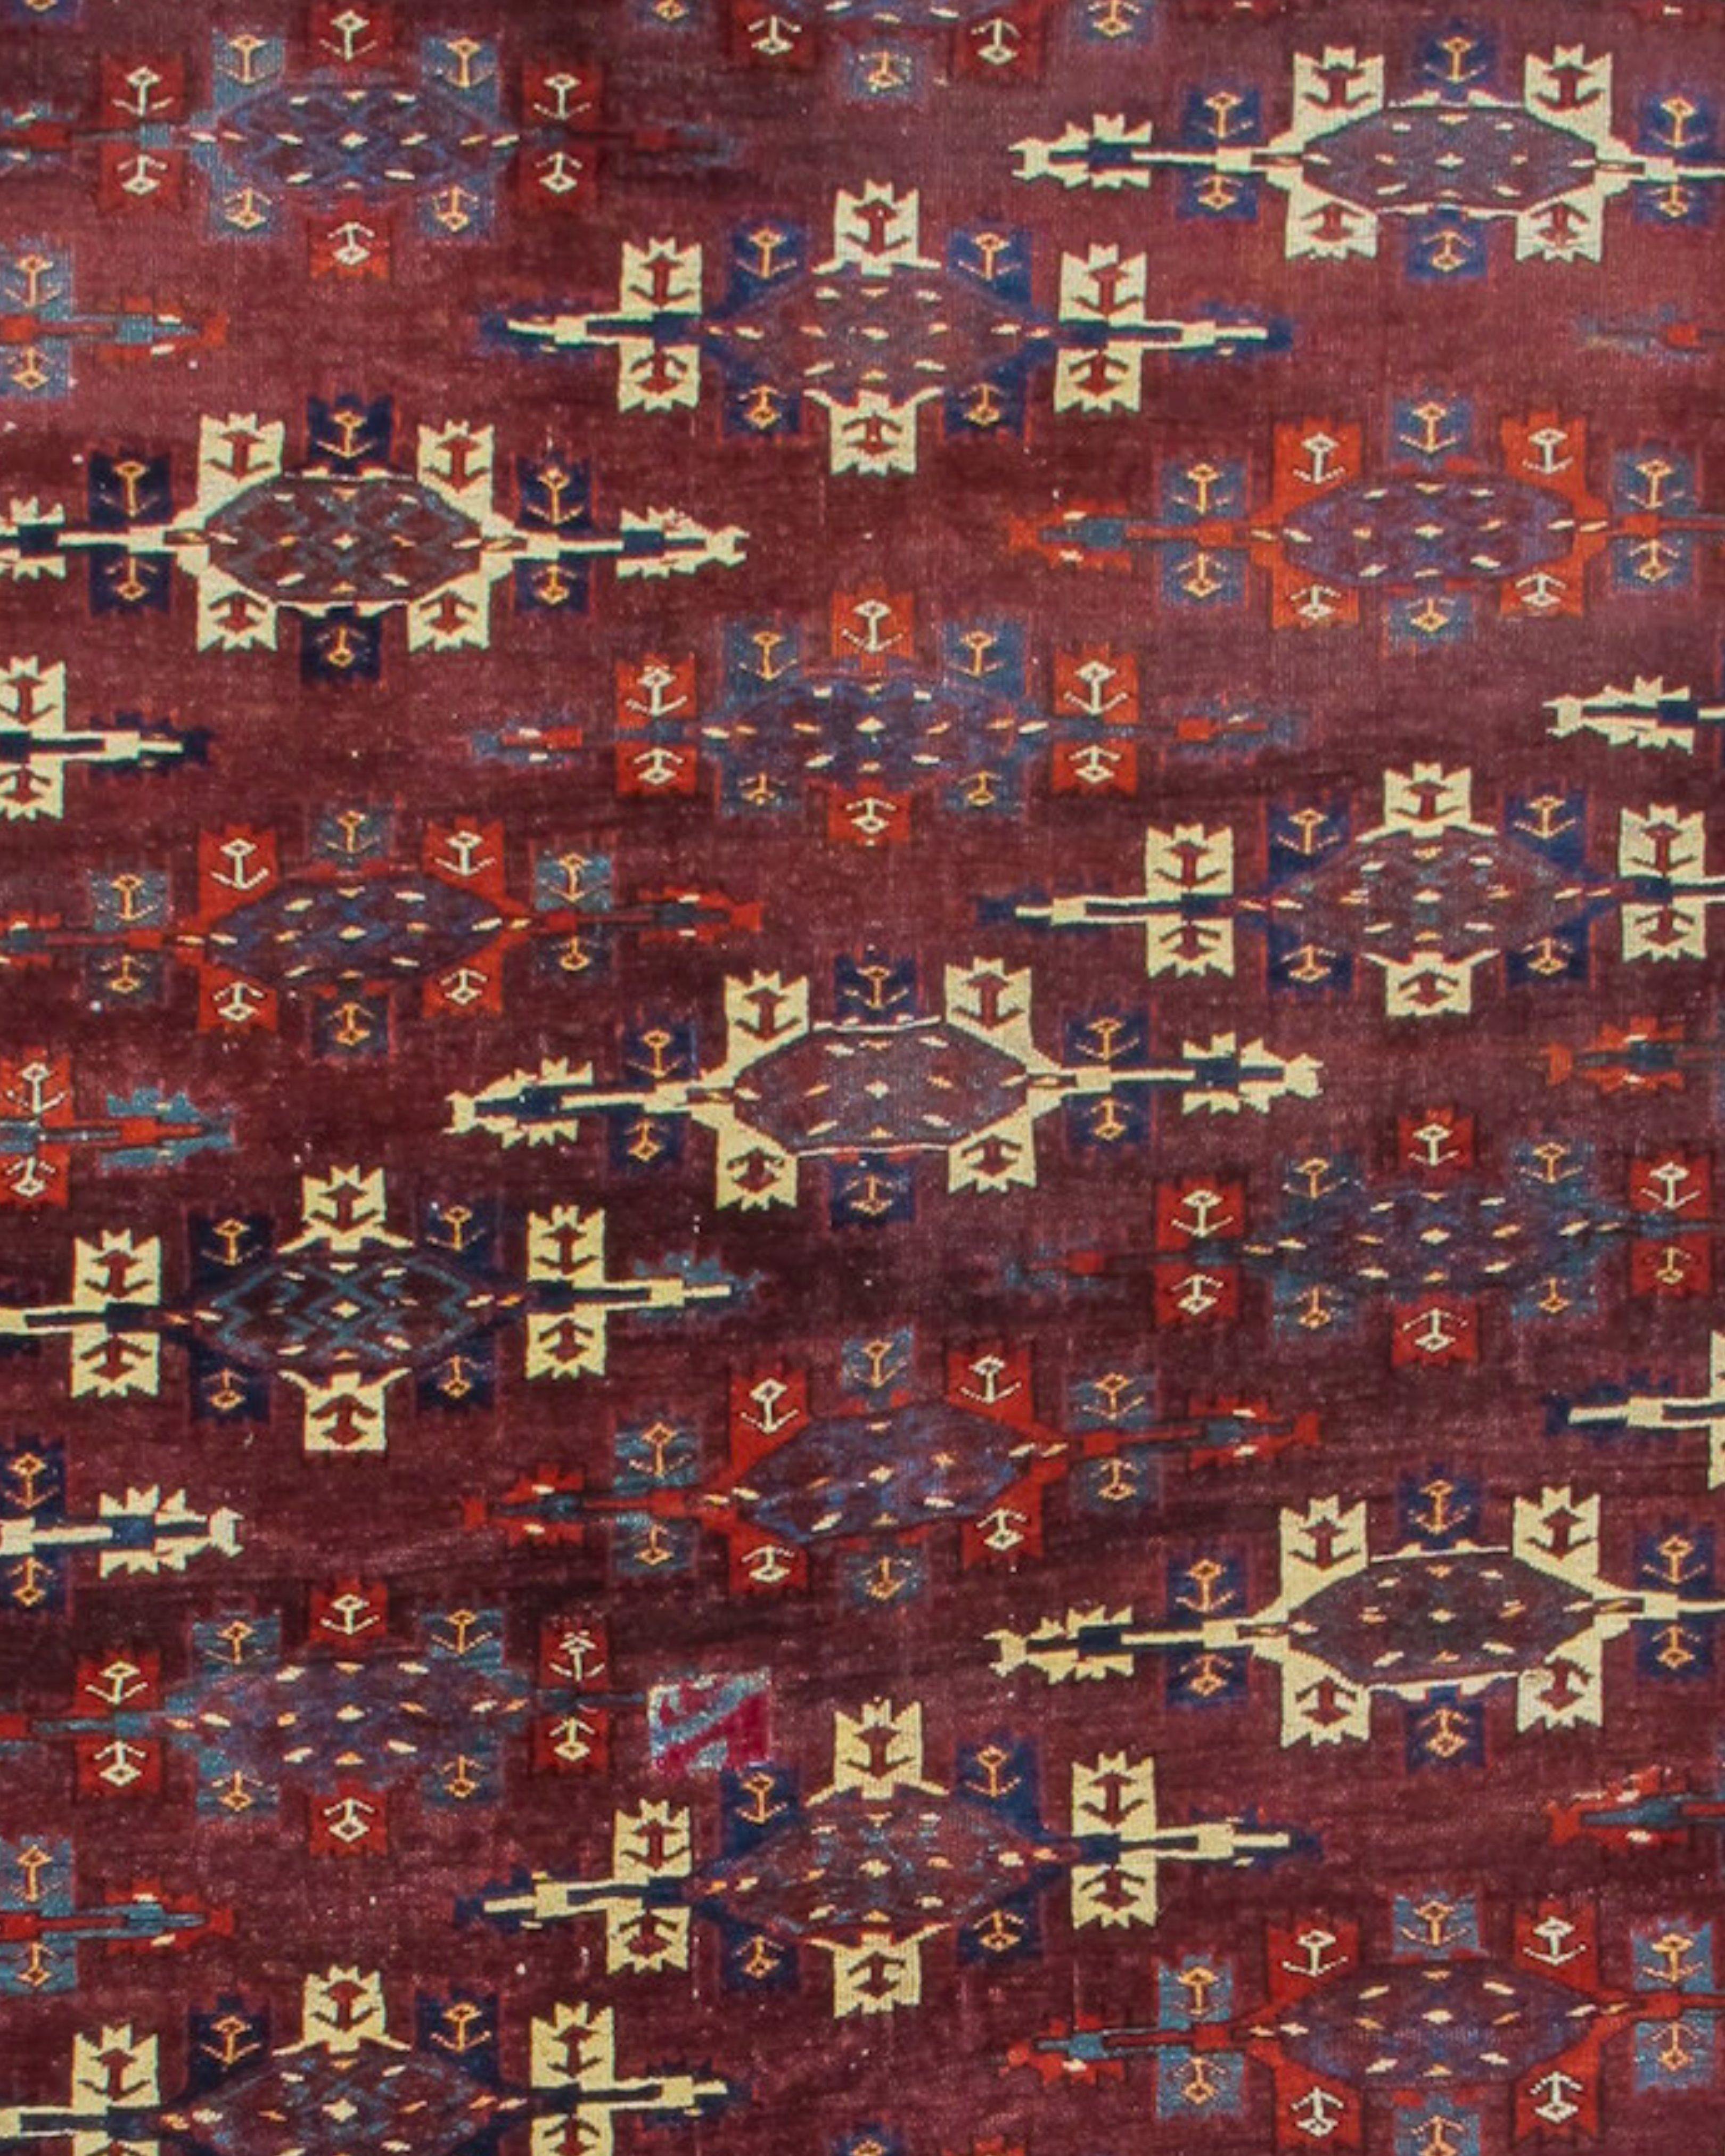 Tapis antique turkmène Yomut principal, 19ème siècle

Ce tapis principal turkmène classique présente le motif de champ dit 